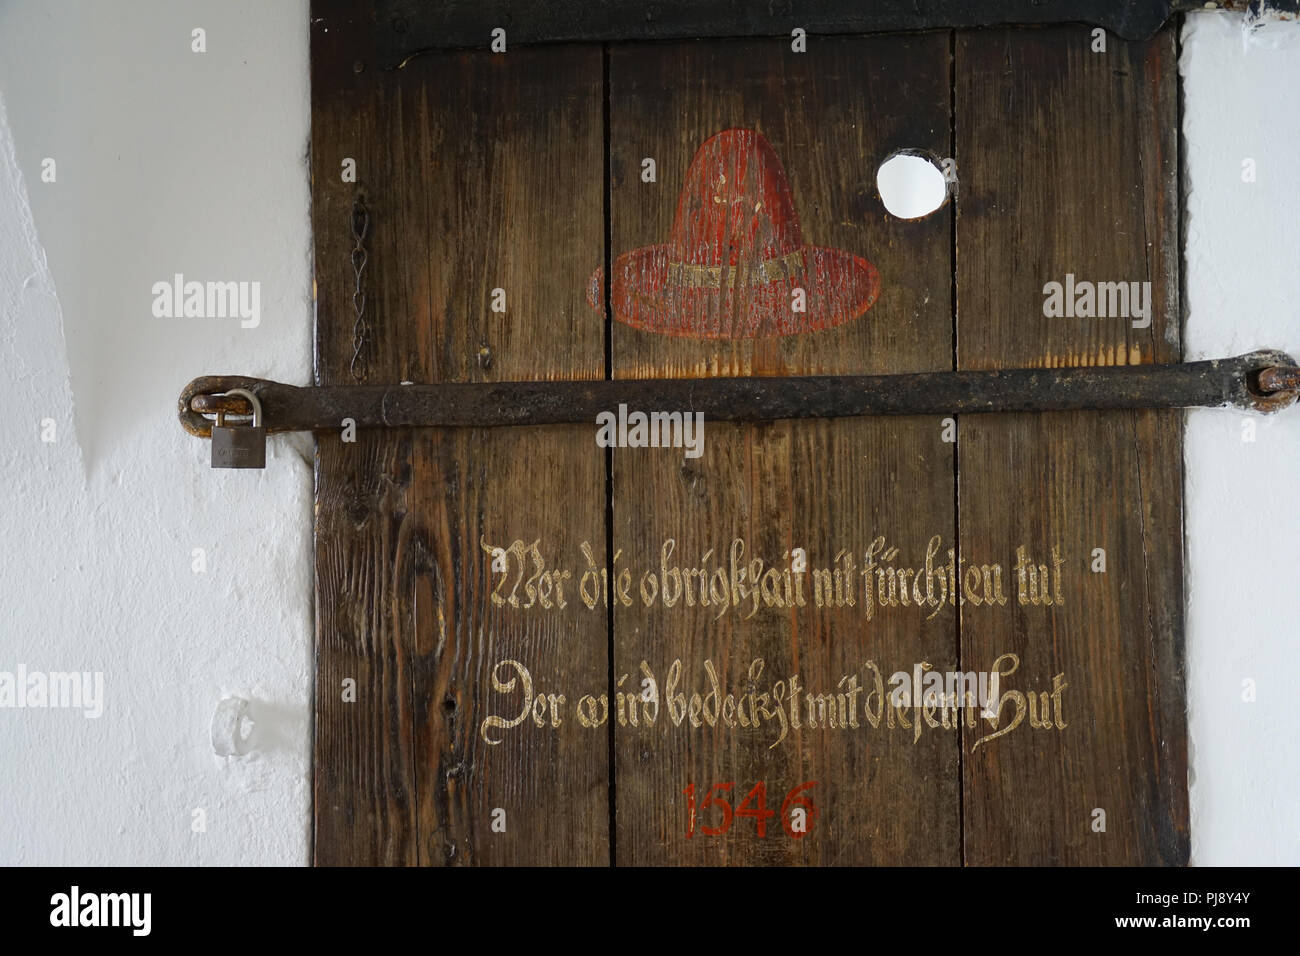 Inschrift, roter Hut, alte Holztür, ehemals Eingang zum Buergergefängnis, altes Rathaus, Passau, Bayern Deutschland Stock Photo